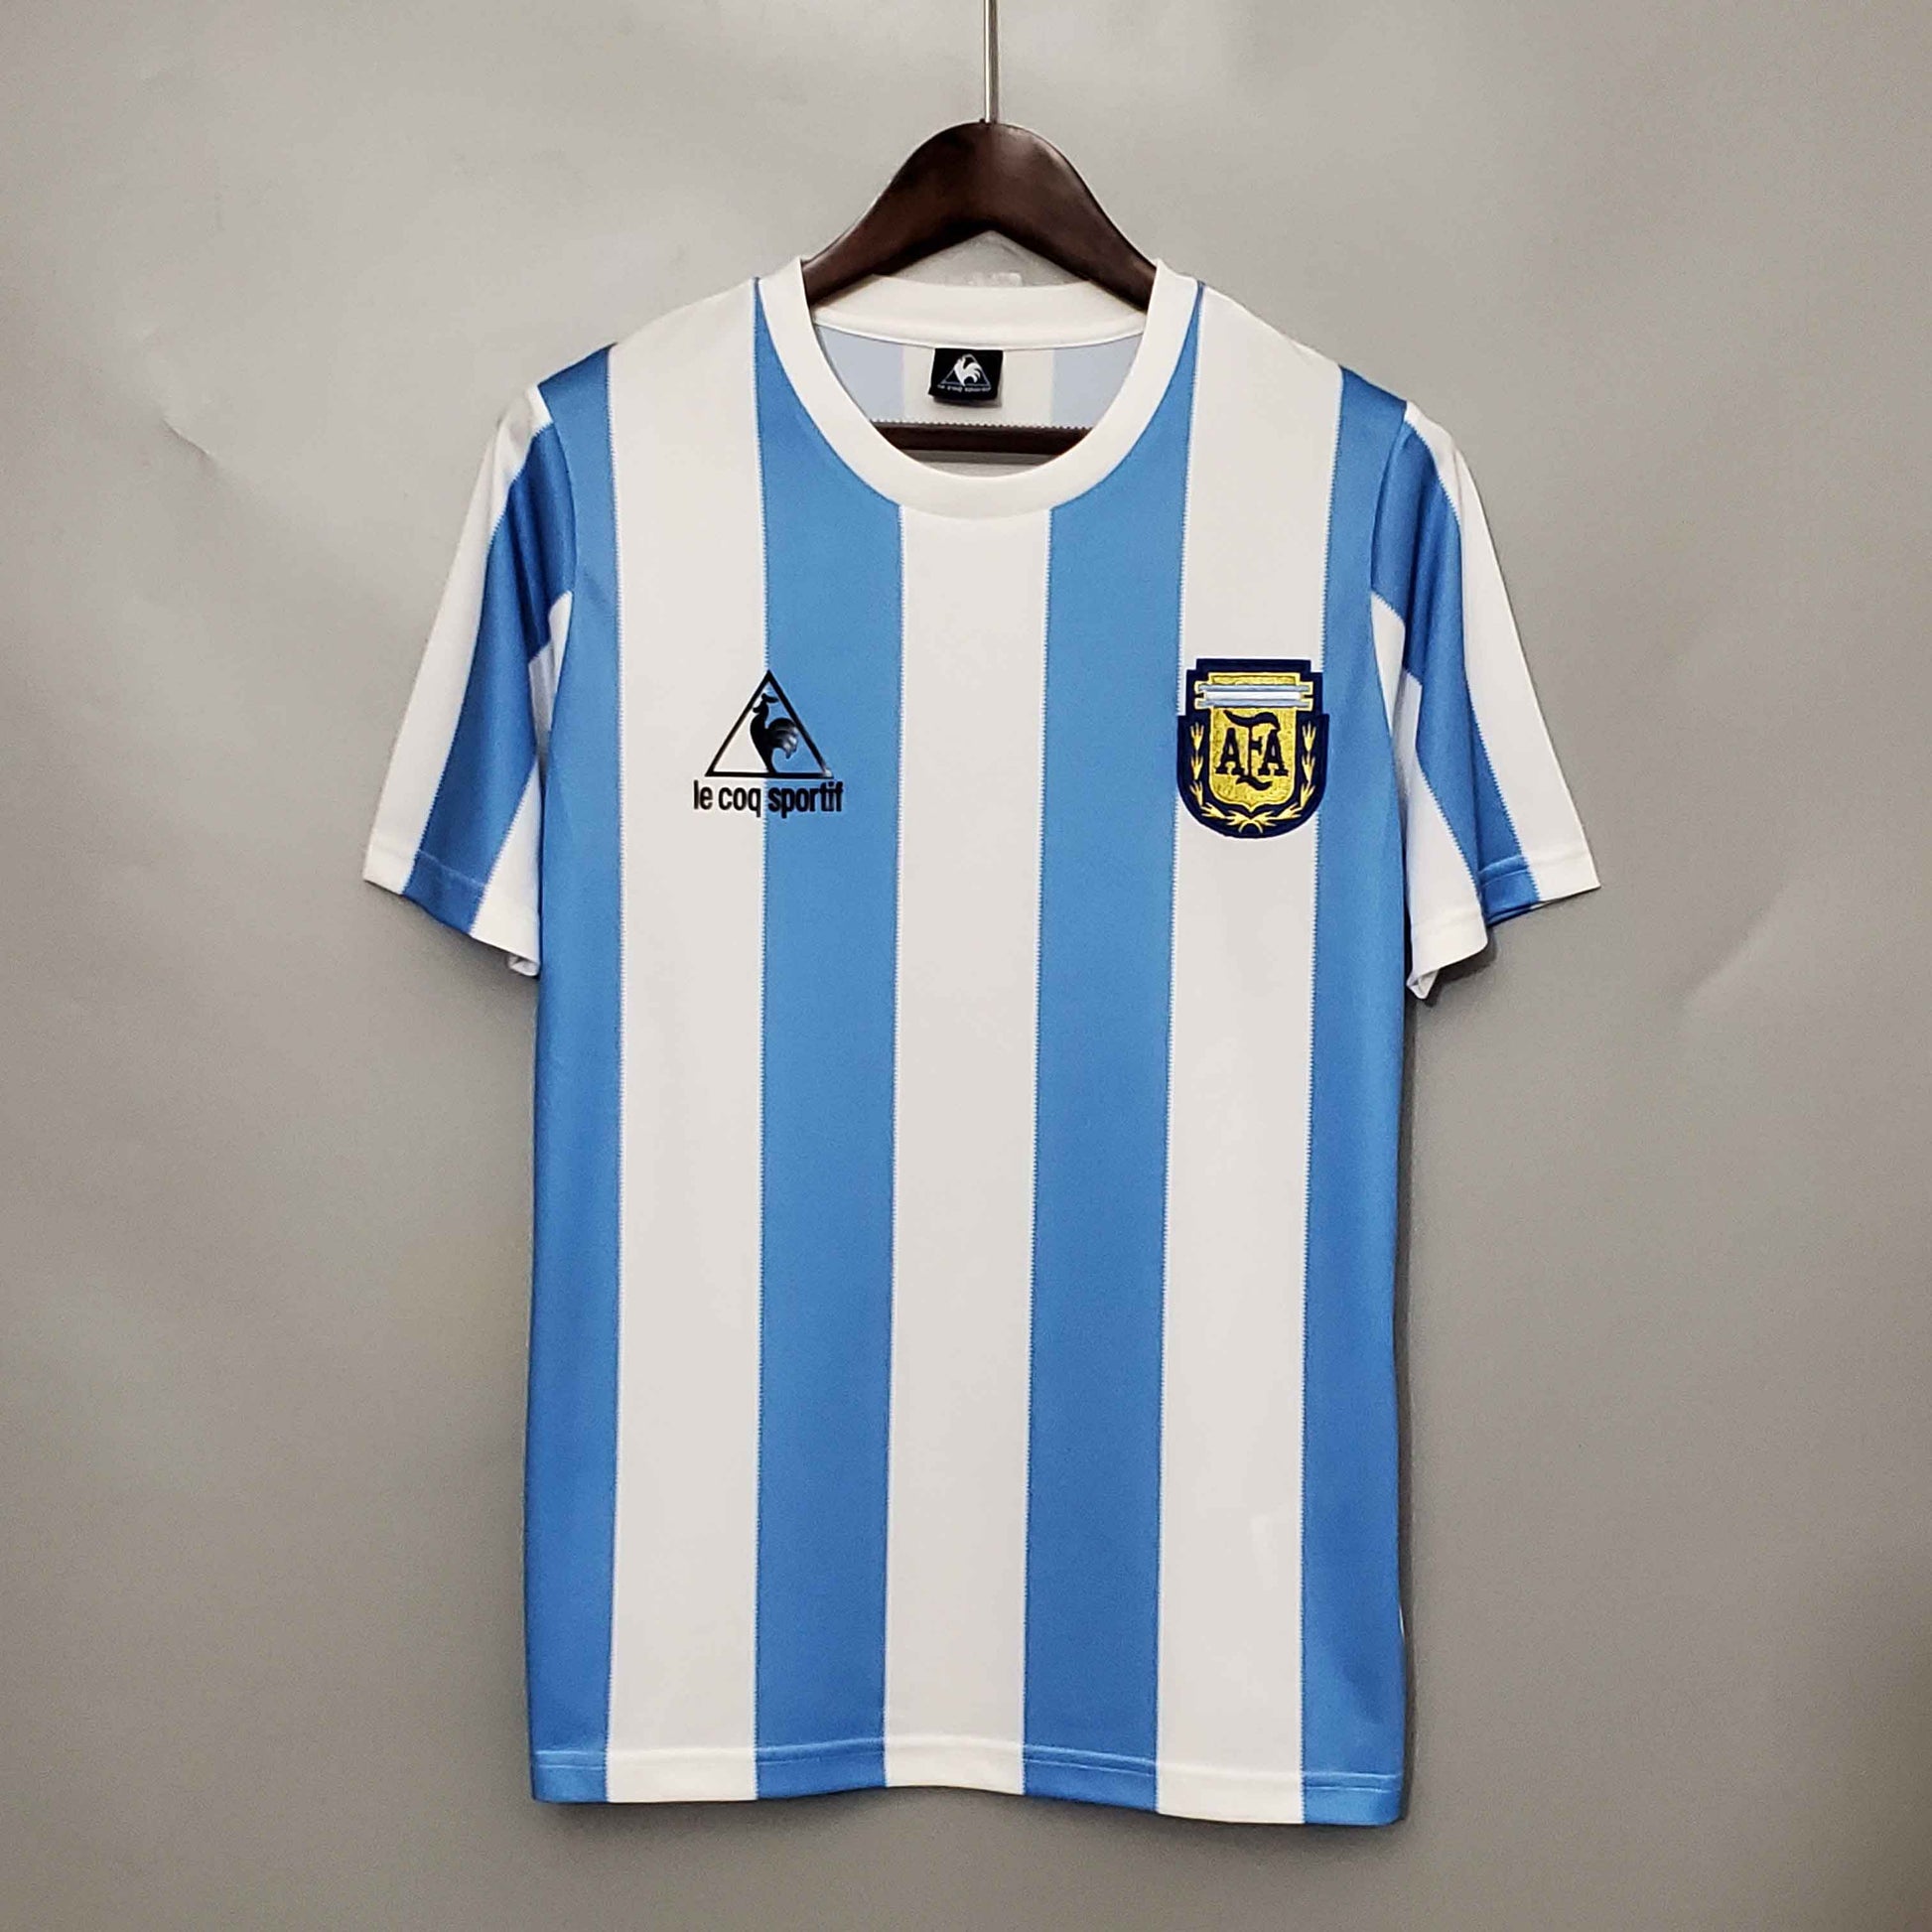 Argentina 86 Maradona – Maglie Top Quality